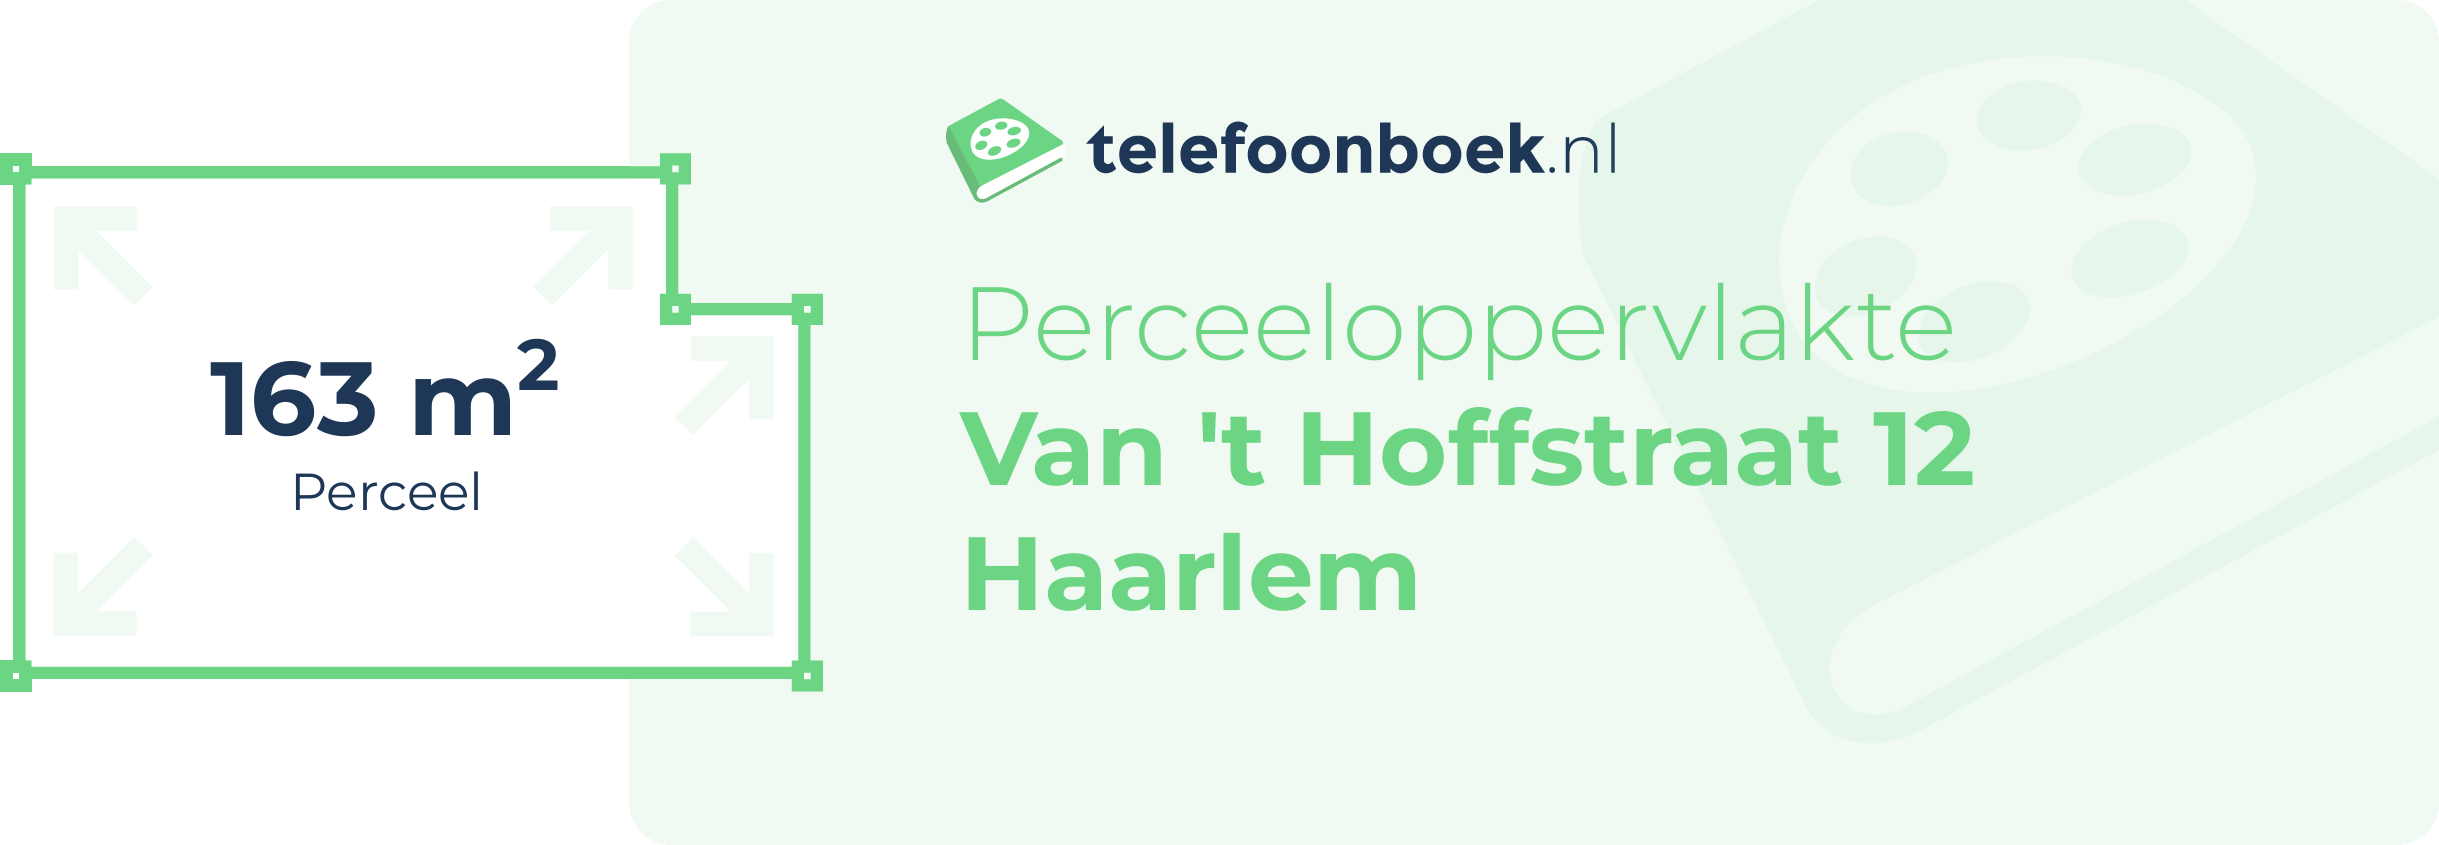 Perceeloppervlakte Van 't Hoffstraat 12 Haarlem